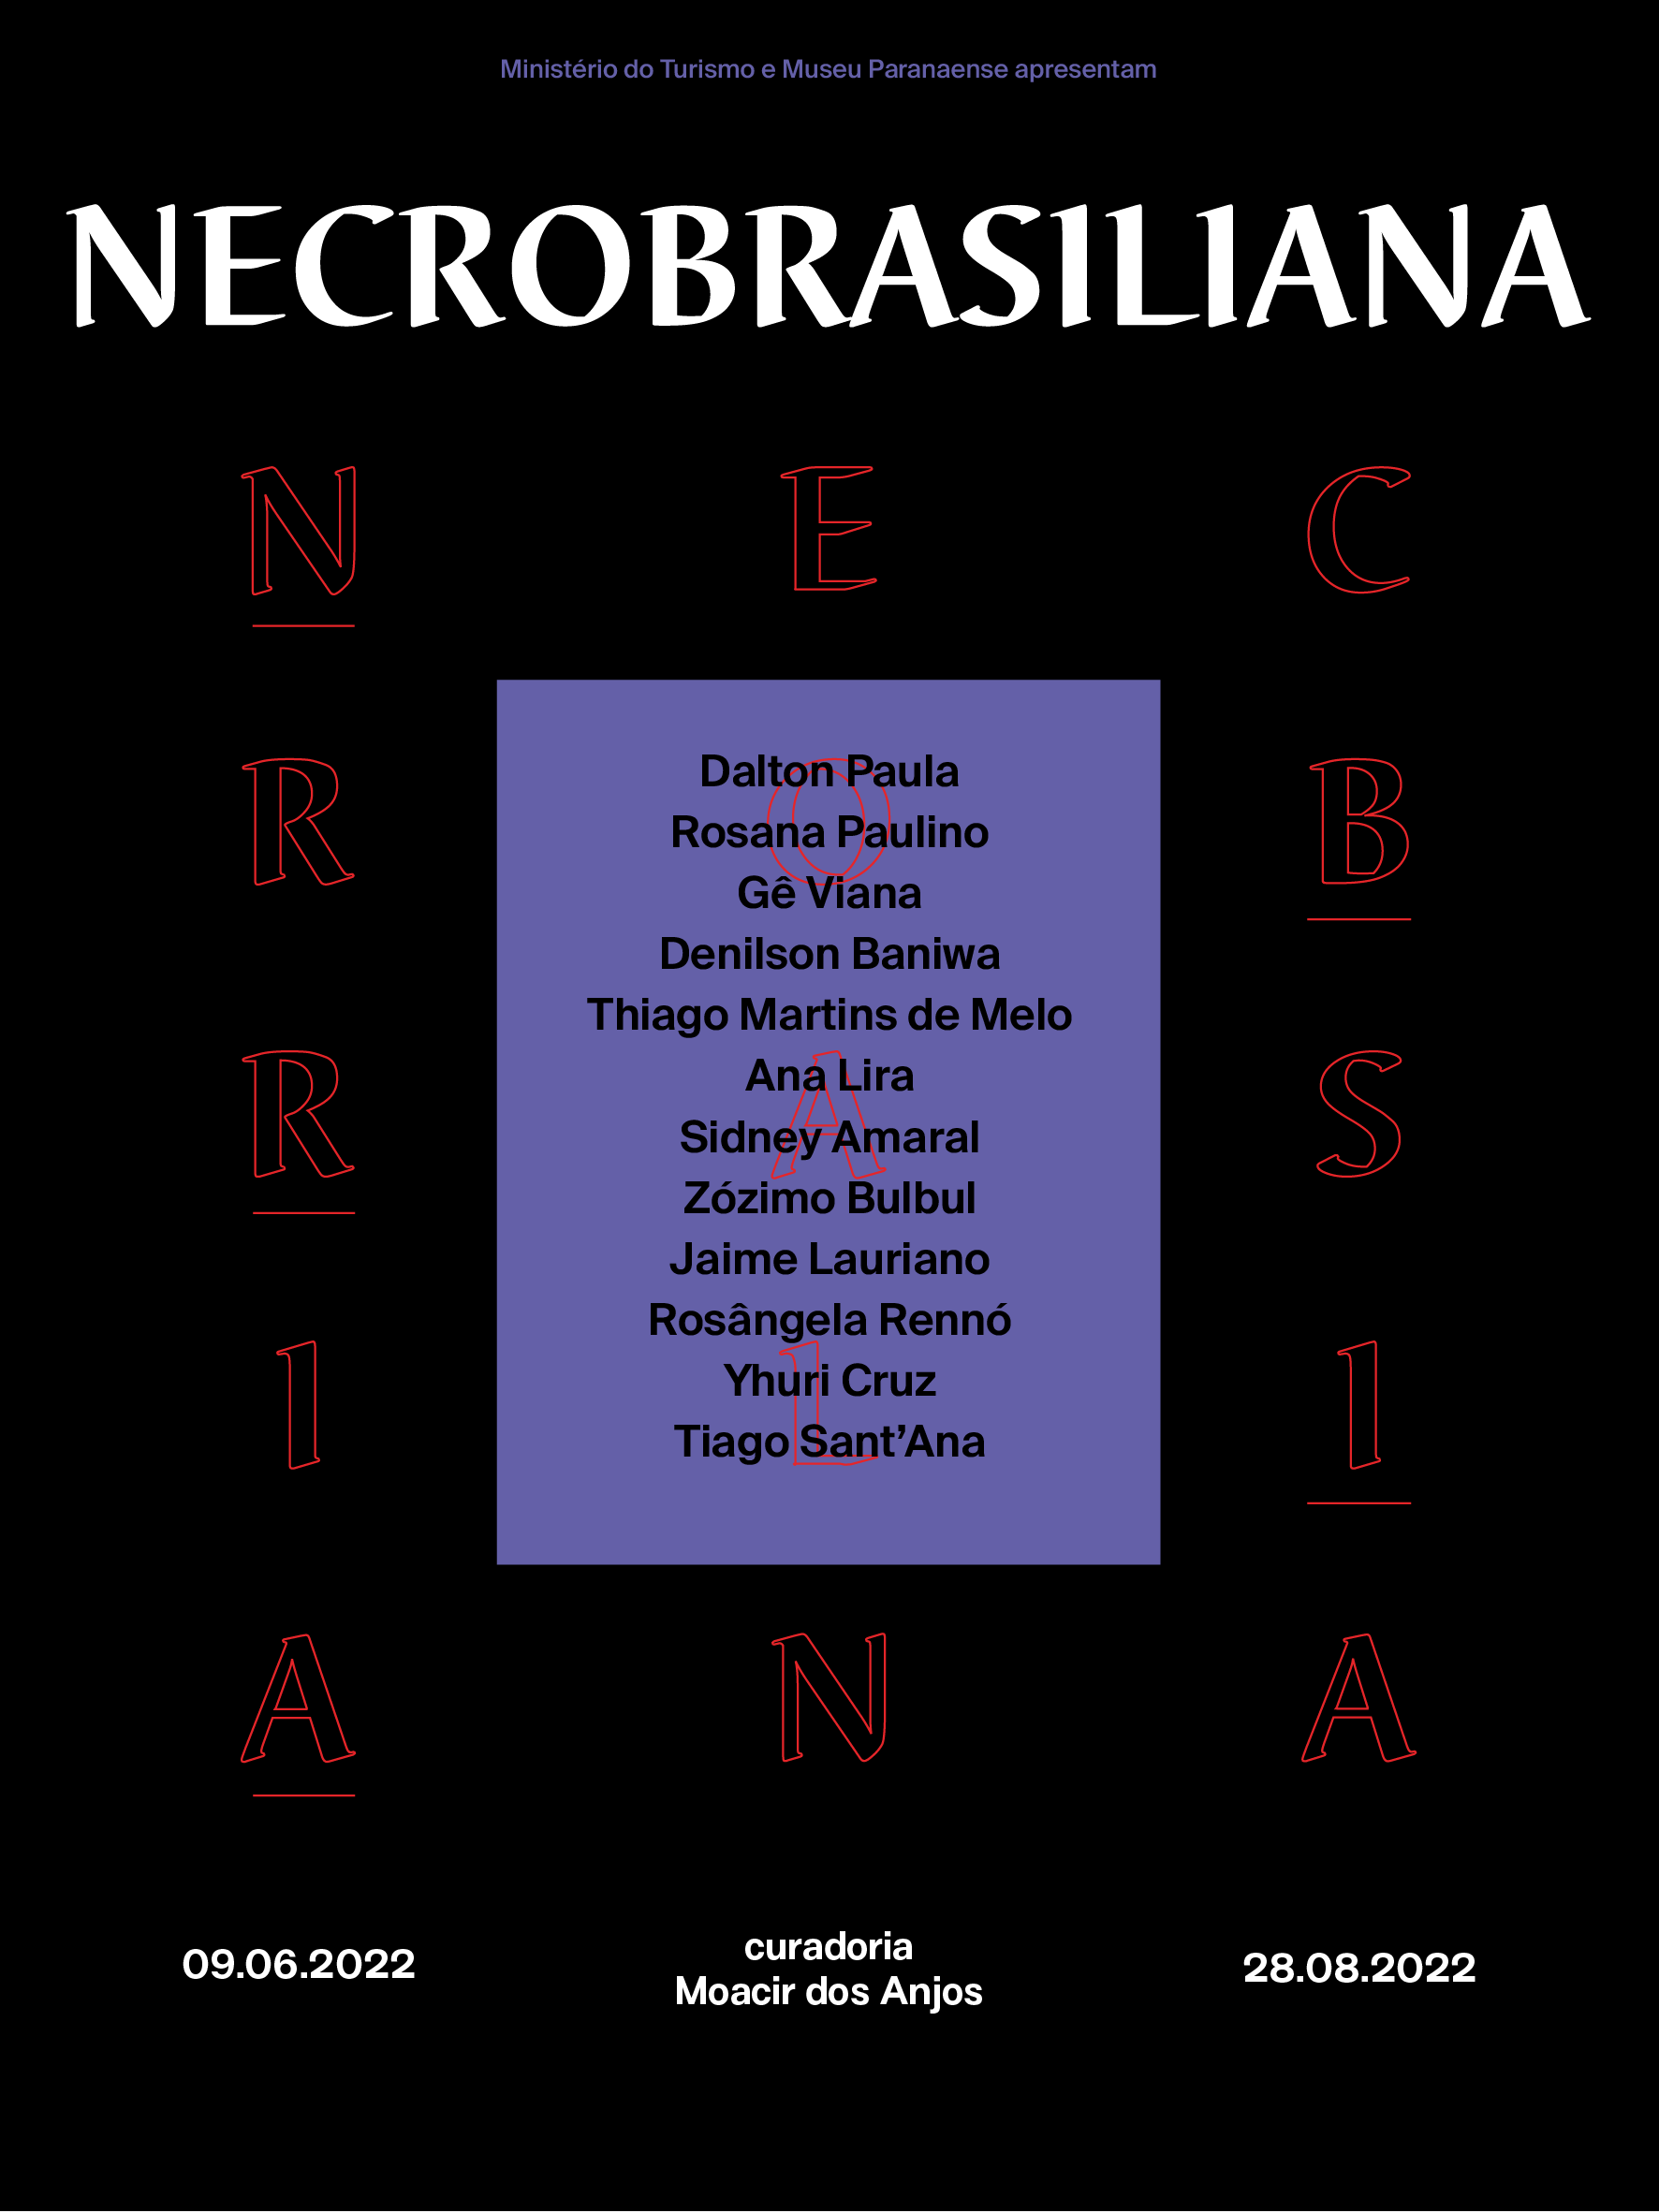 Capa do jornal da exposição "Necrobrasiliana"